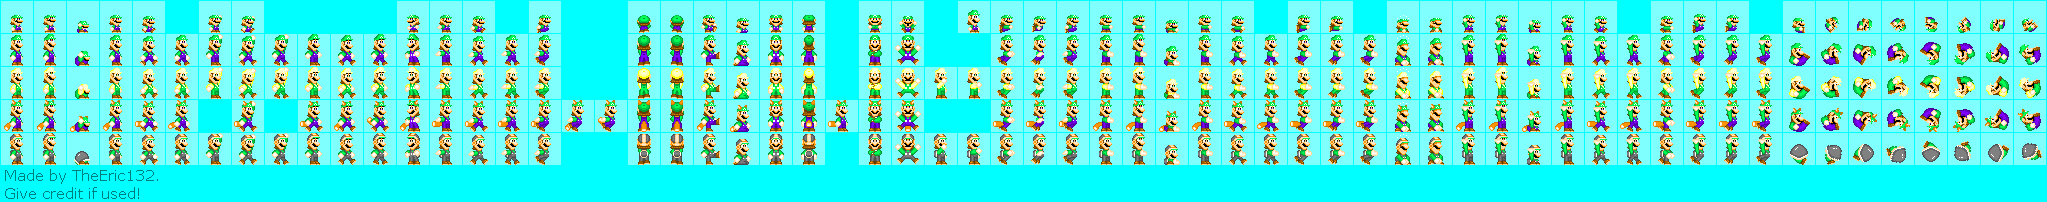 Mario Customs - Luigi